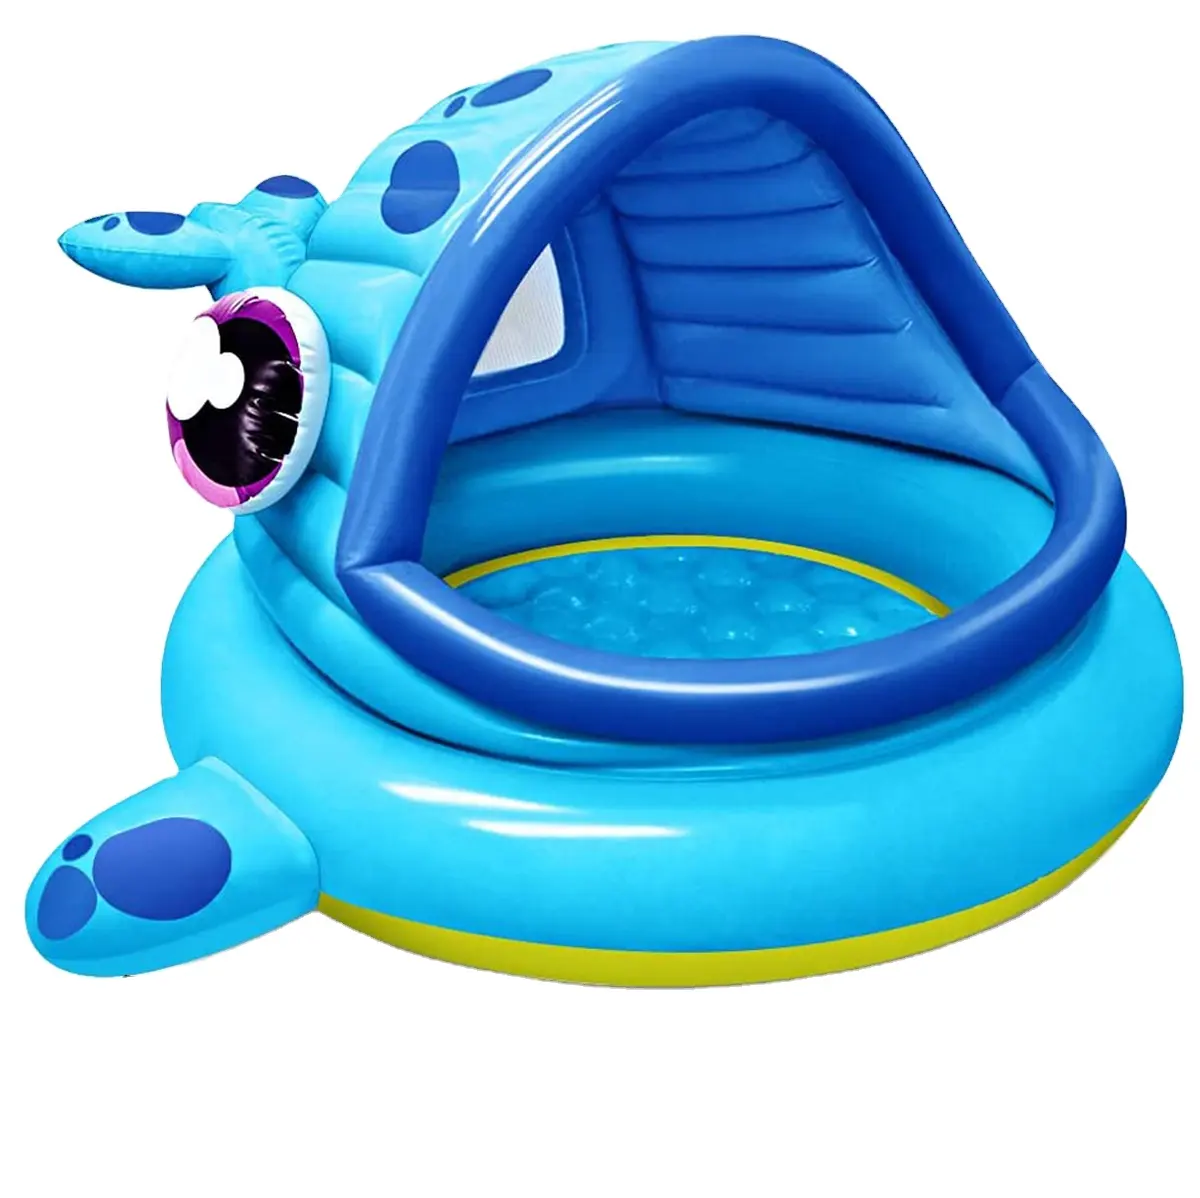 Inflatable Cá voi tán trẻ sơ sinh hồ bơi Float cho trẻ em tuổi 6-36 tháng bé thổi phồng hồ bơi với Sun Shade cho nước chơi